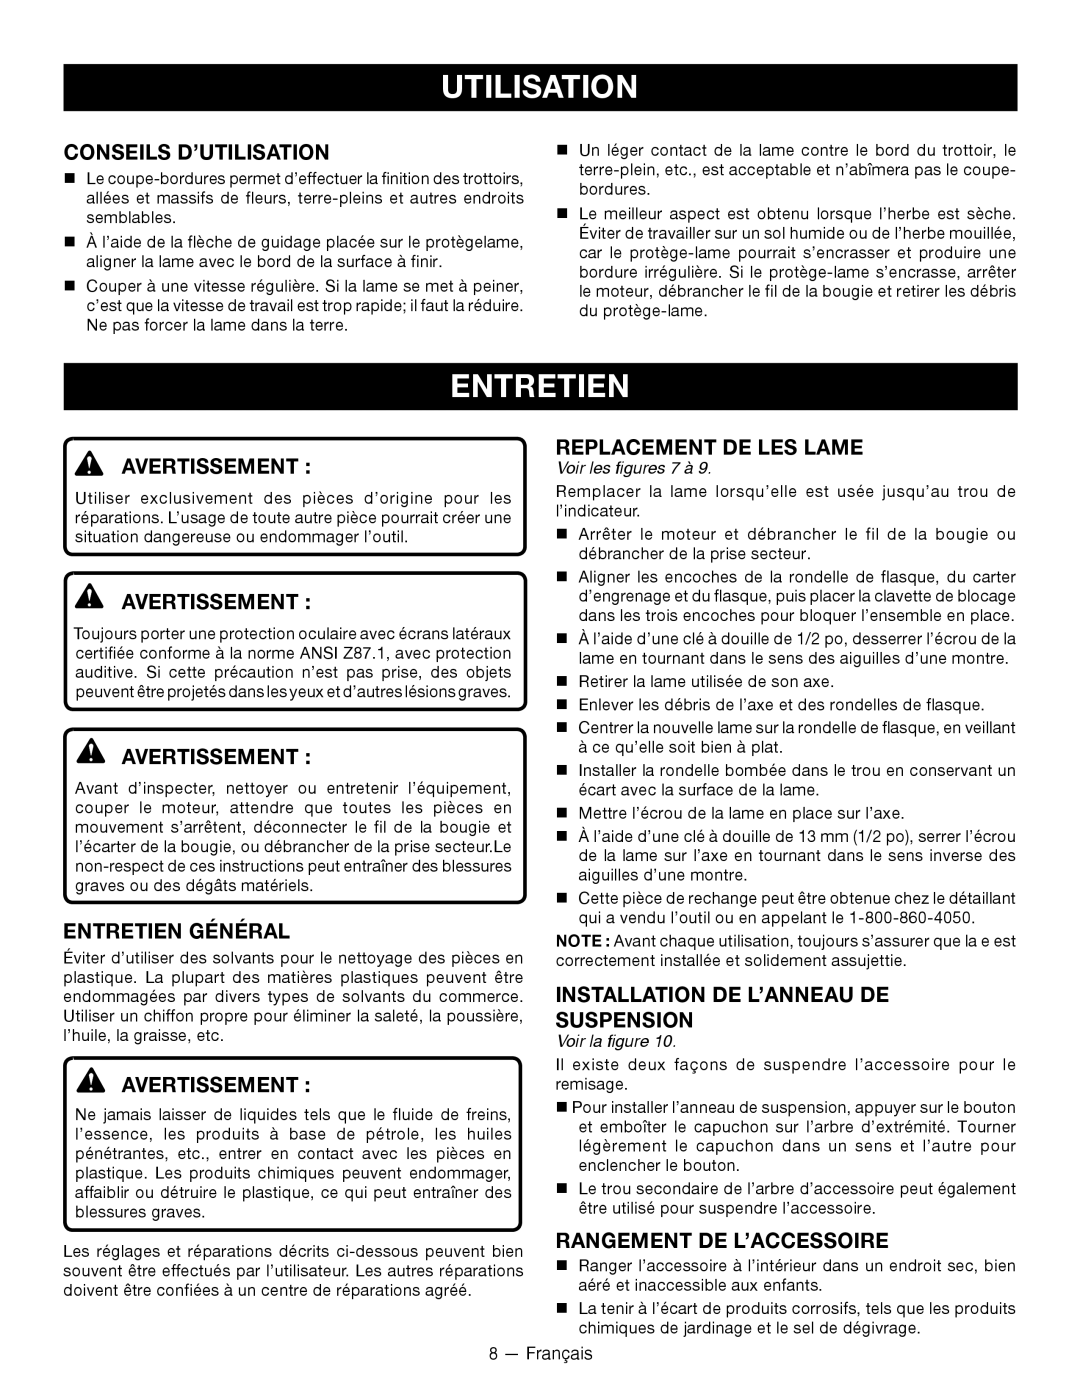 Ryobi RY15518 Conseils D’Utilisation, Entretien Général, Replacement De Les Lame, Rangement De L’Accessoire 